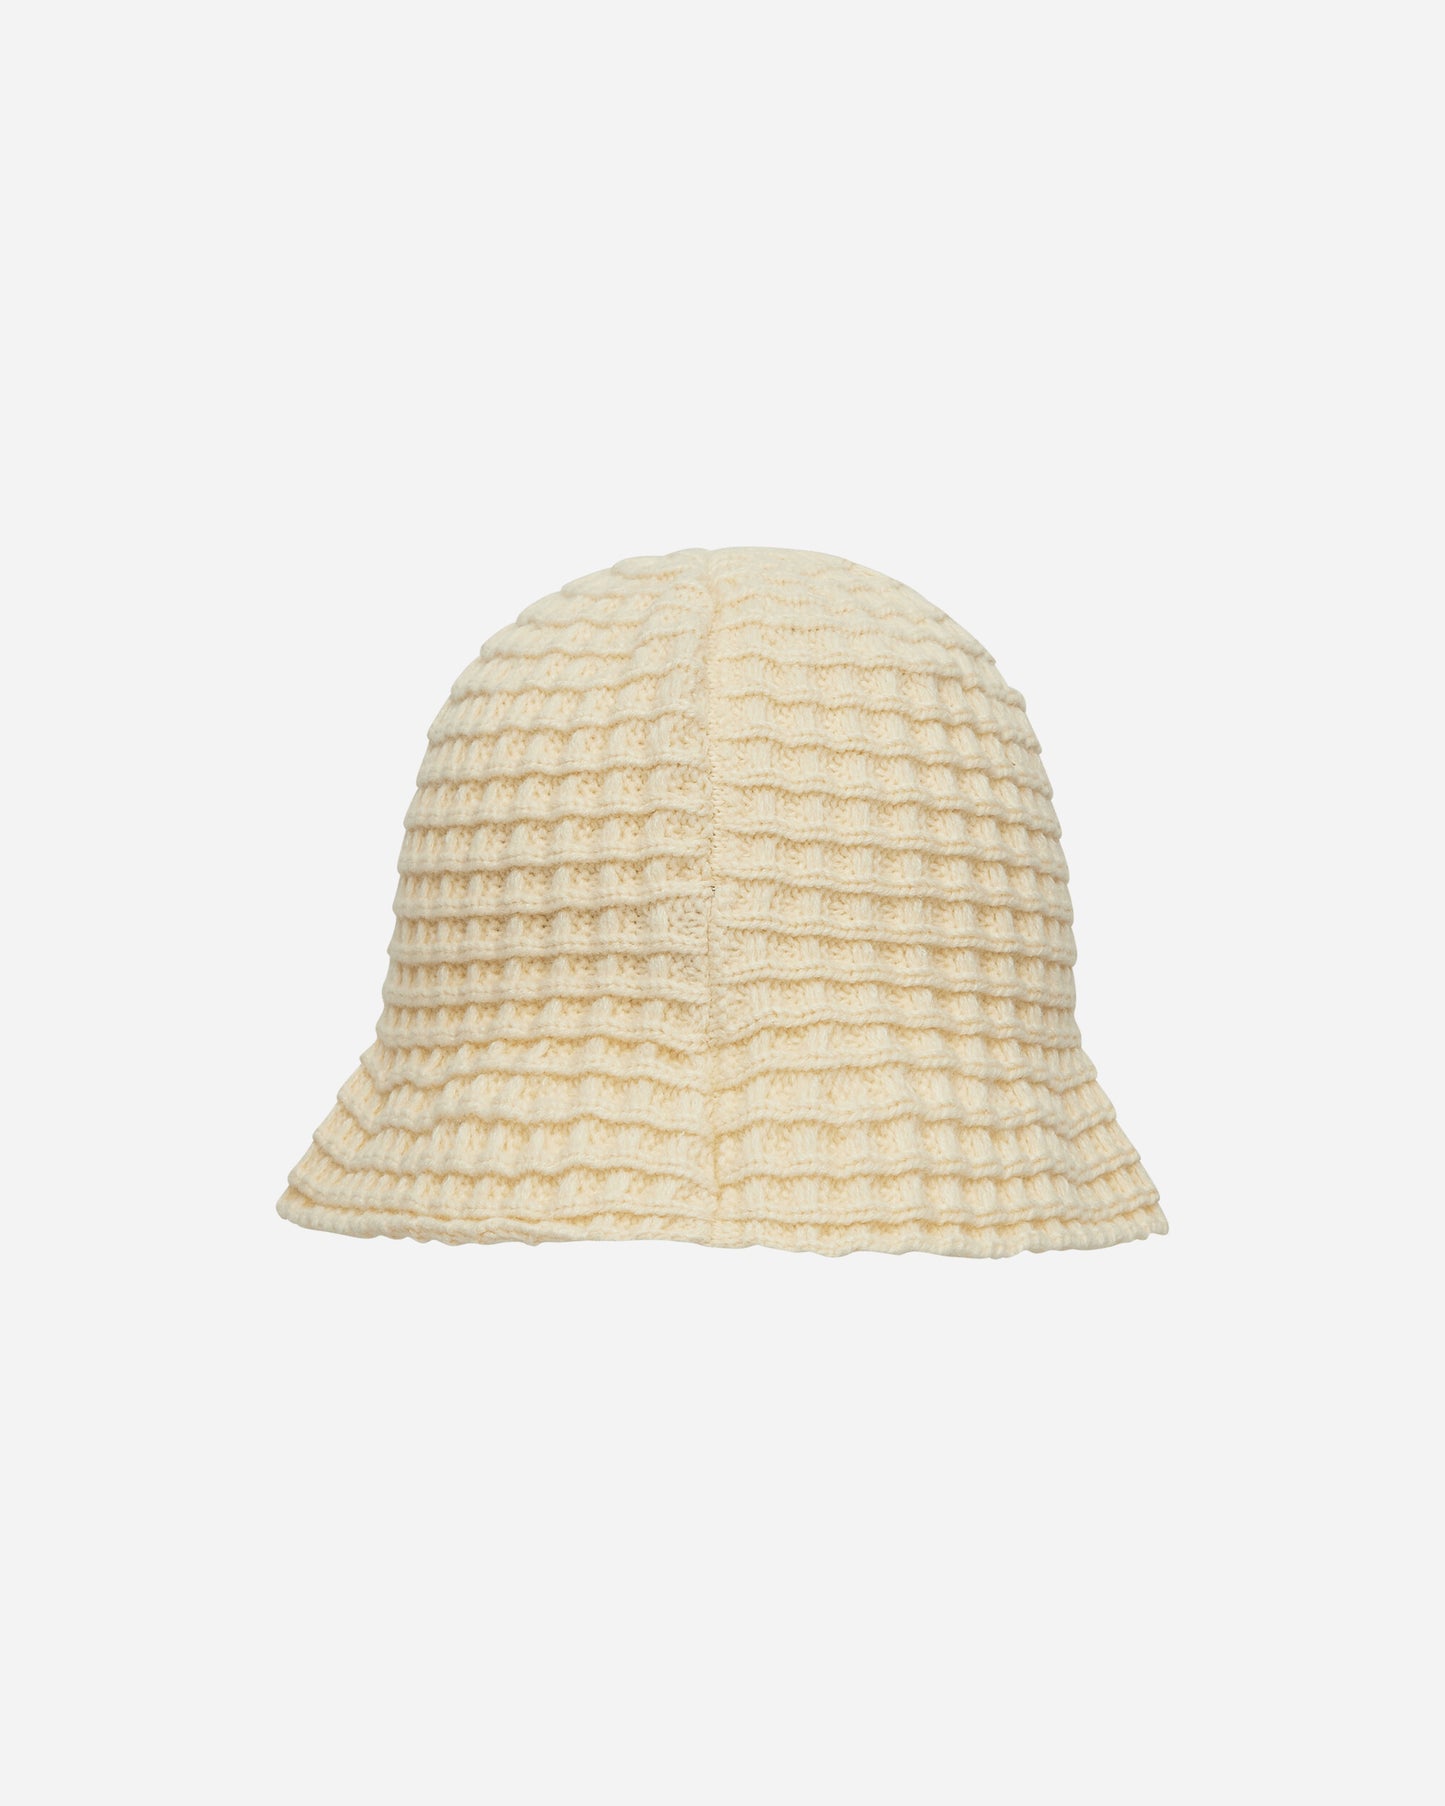 Stüssy Waffle Knit Bucket Hat Bone Hats Bucket 1321201SJ 1207